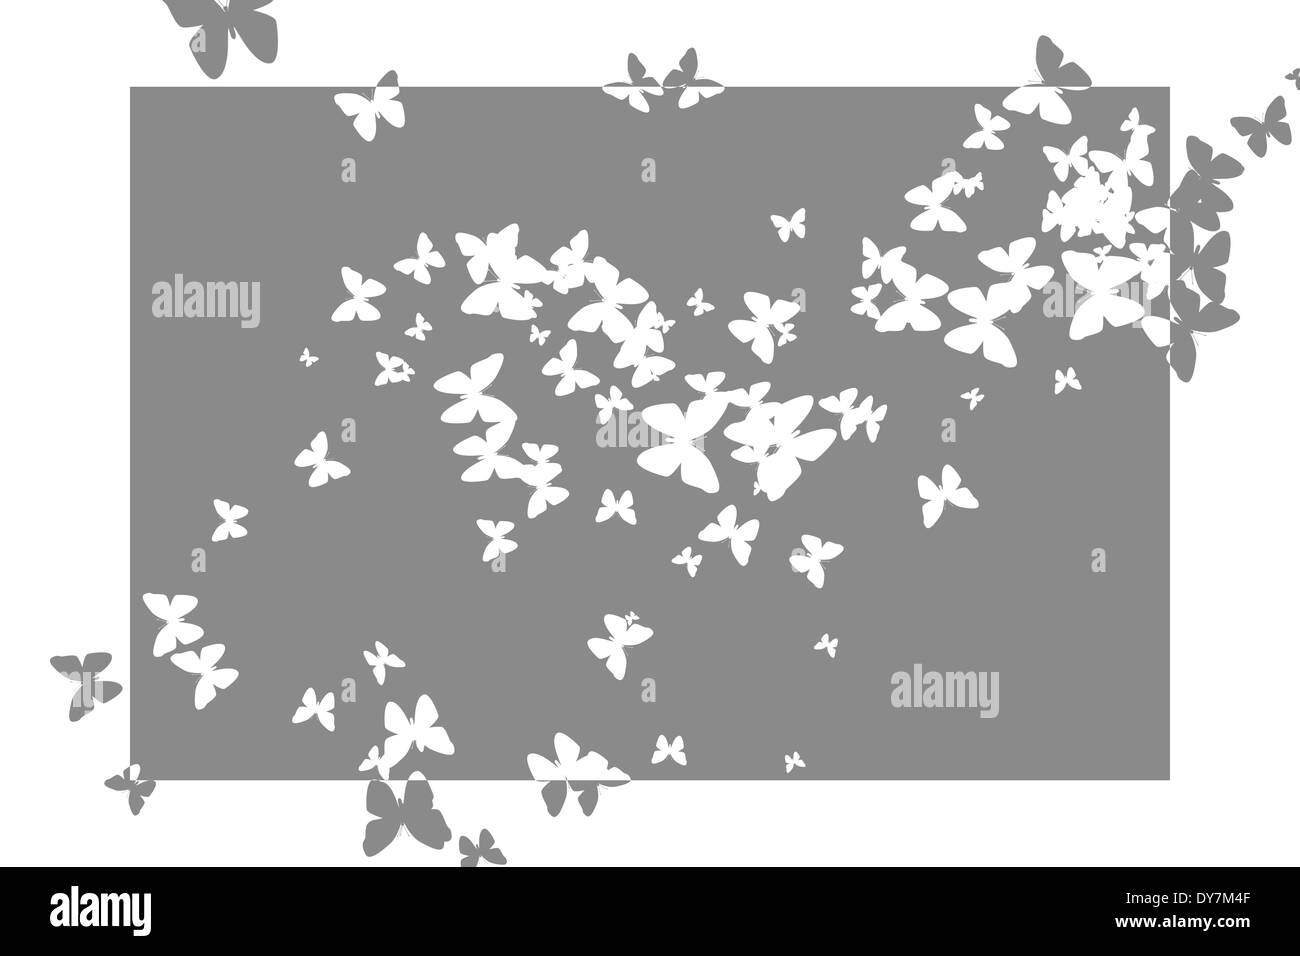 Stencil butterfly pattern design en gris et blanc Banque D'Images